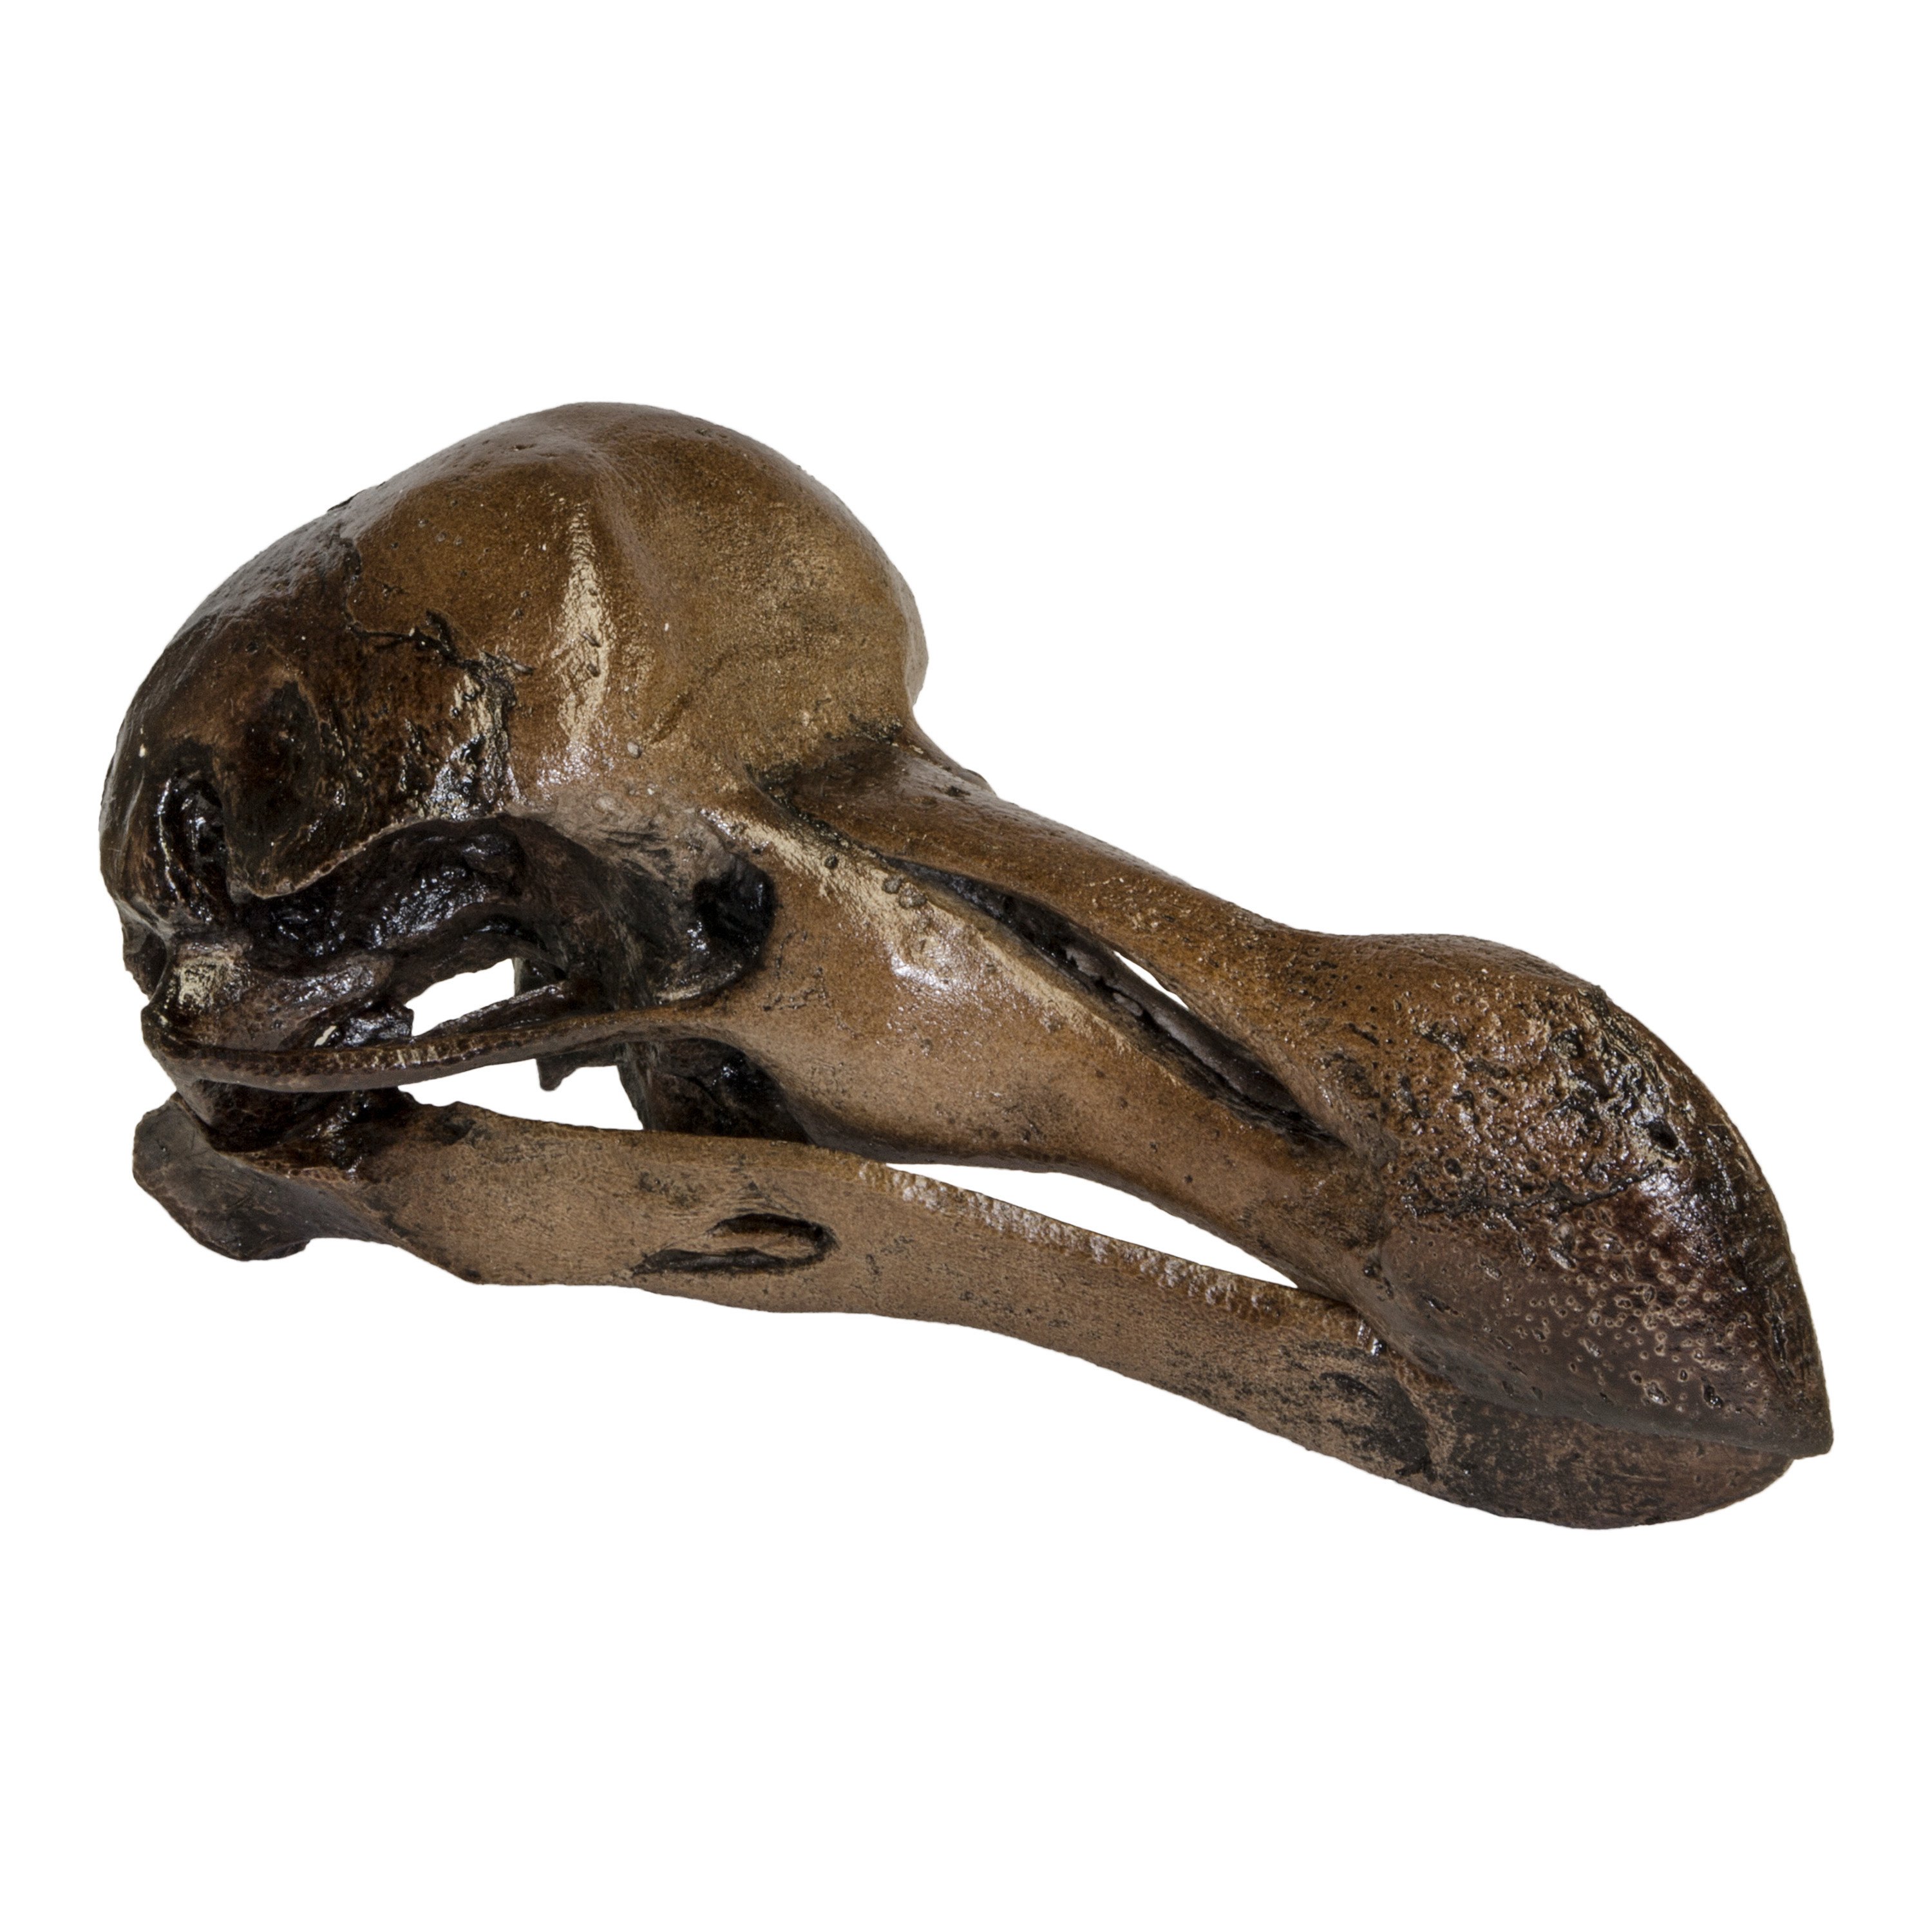 Replica Dodo Bird Skull For Sale – Skulls Unlimited International, Inc.